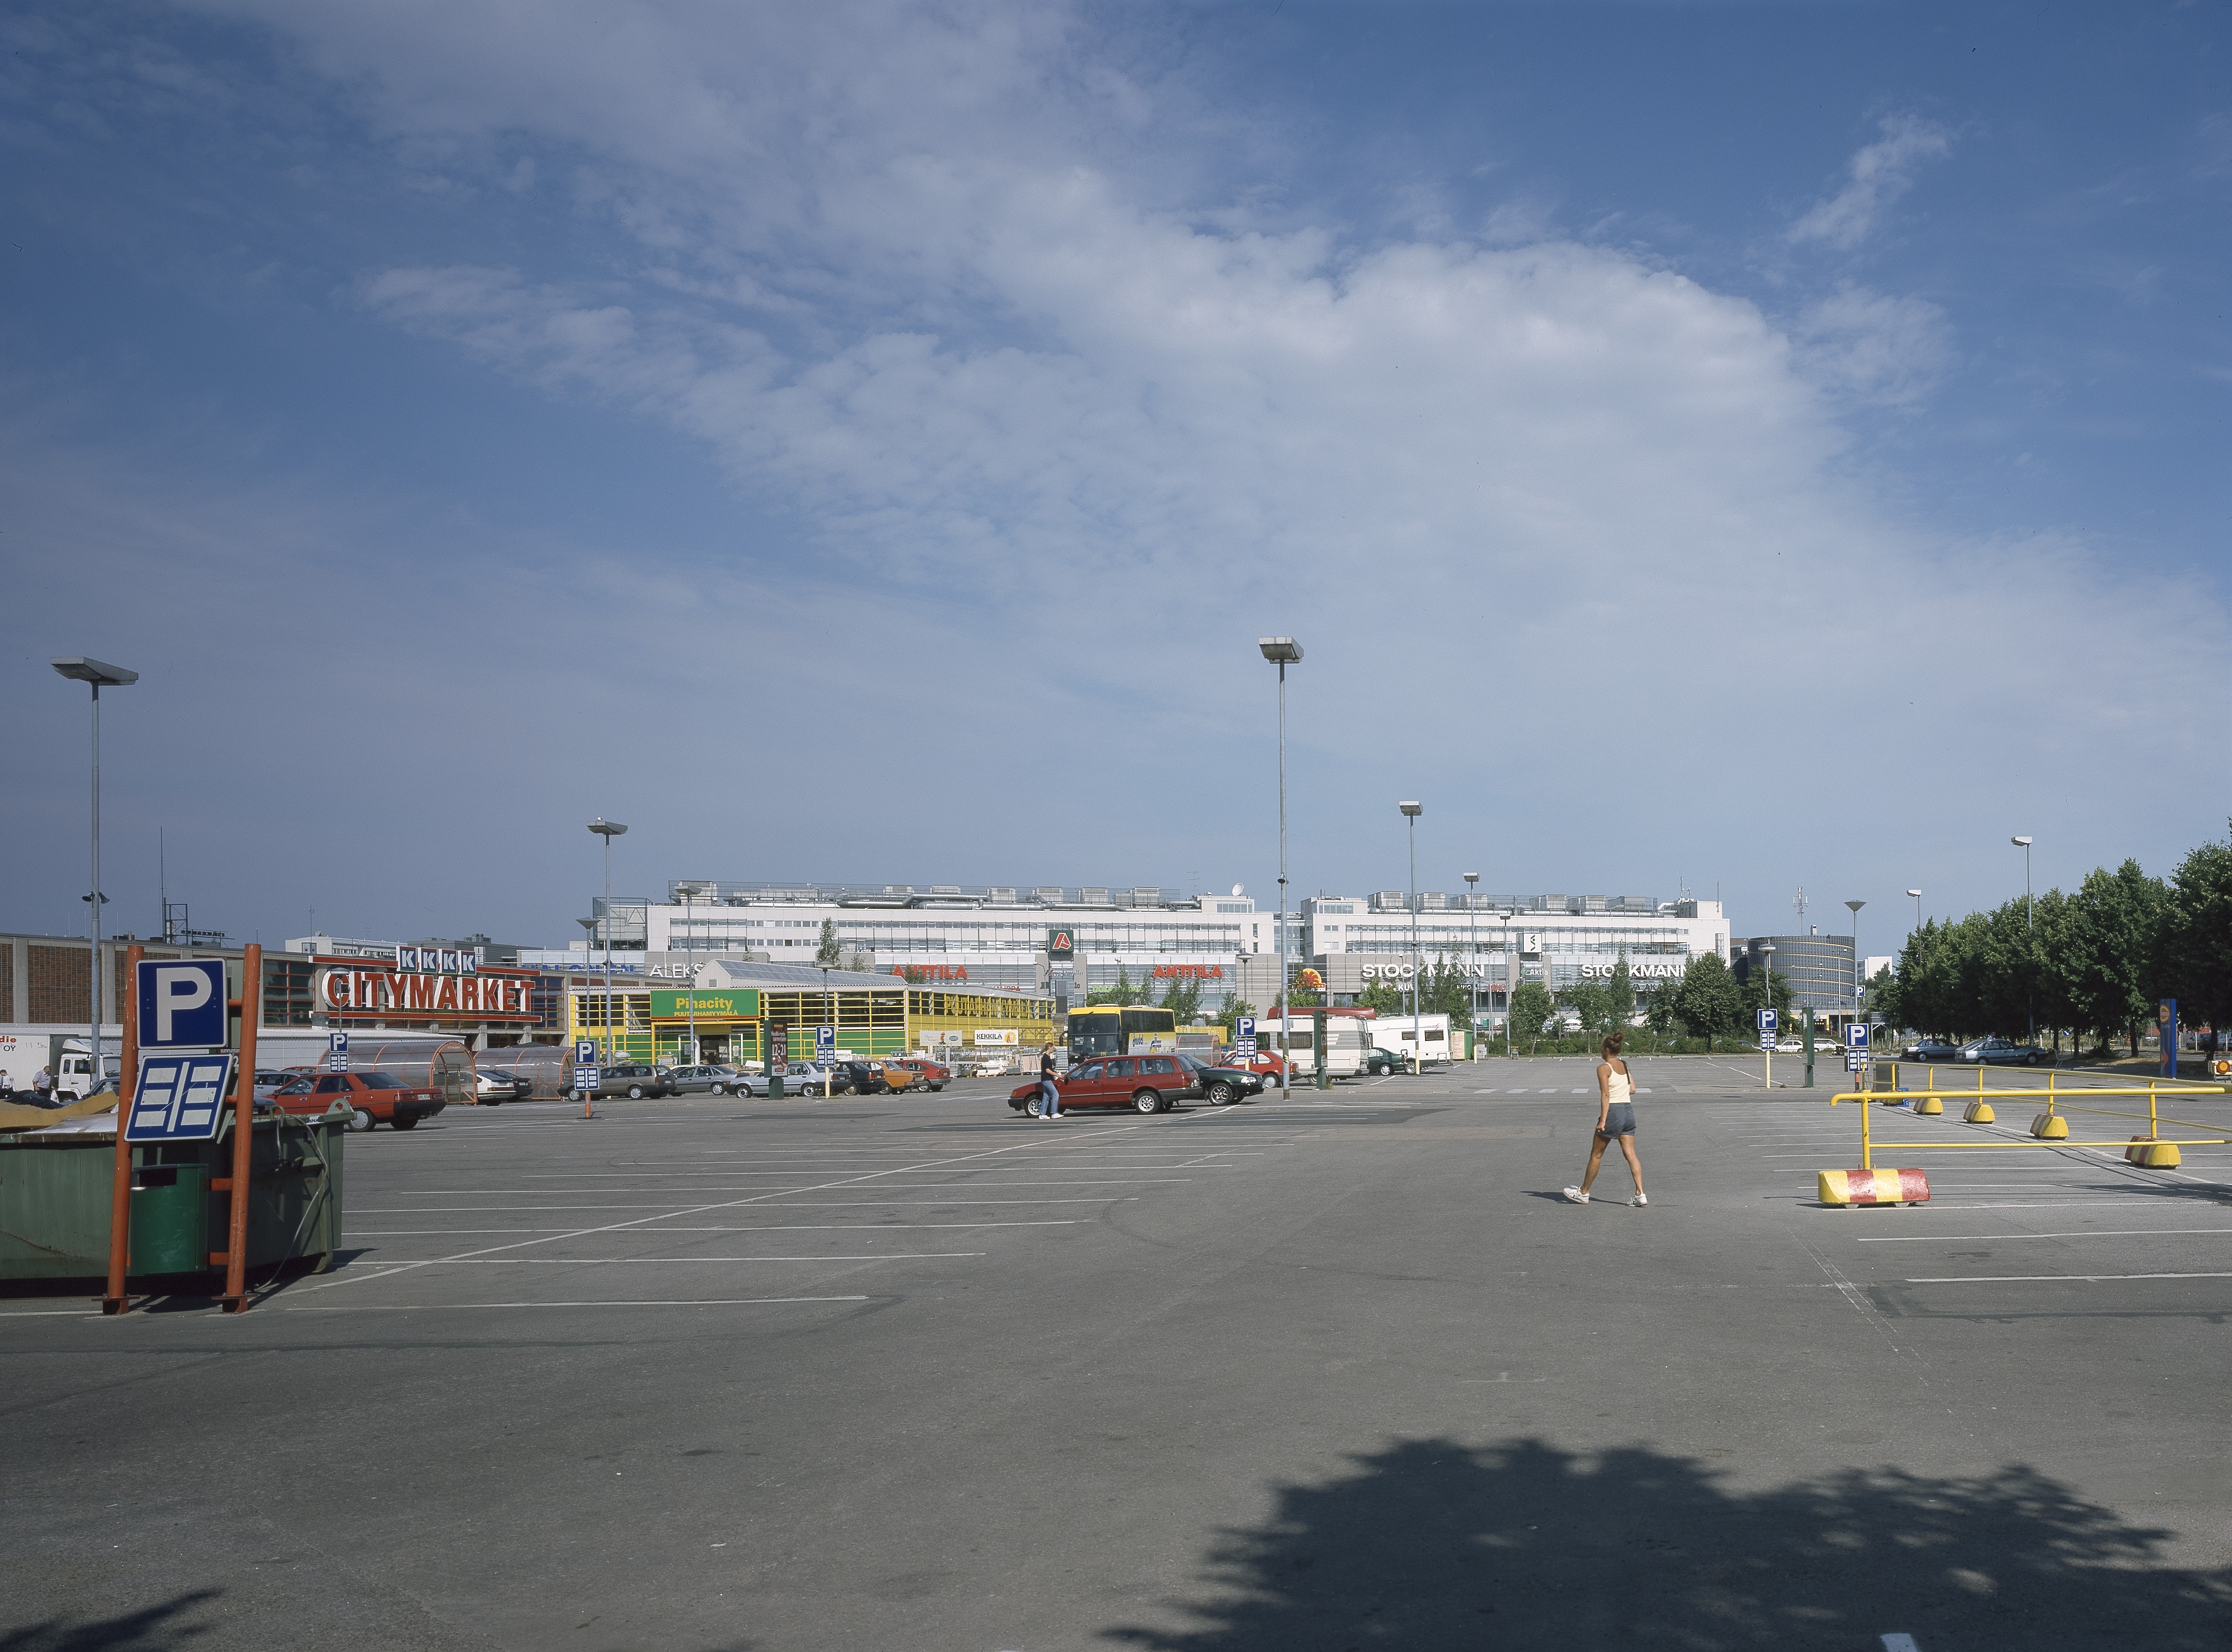 Itäkeskuksen kauppakeskus Citymarketin parkkipaikalta katsottuna.